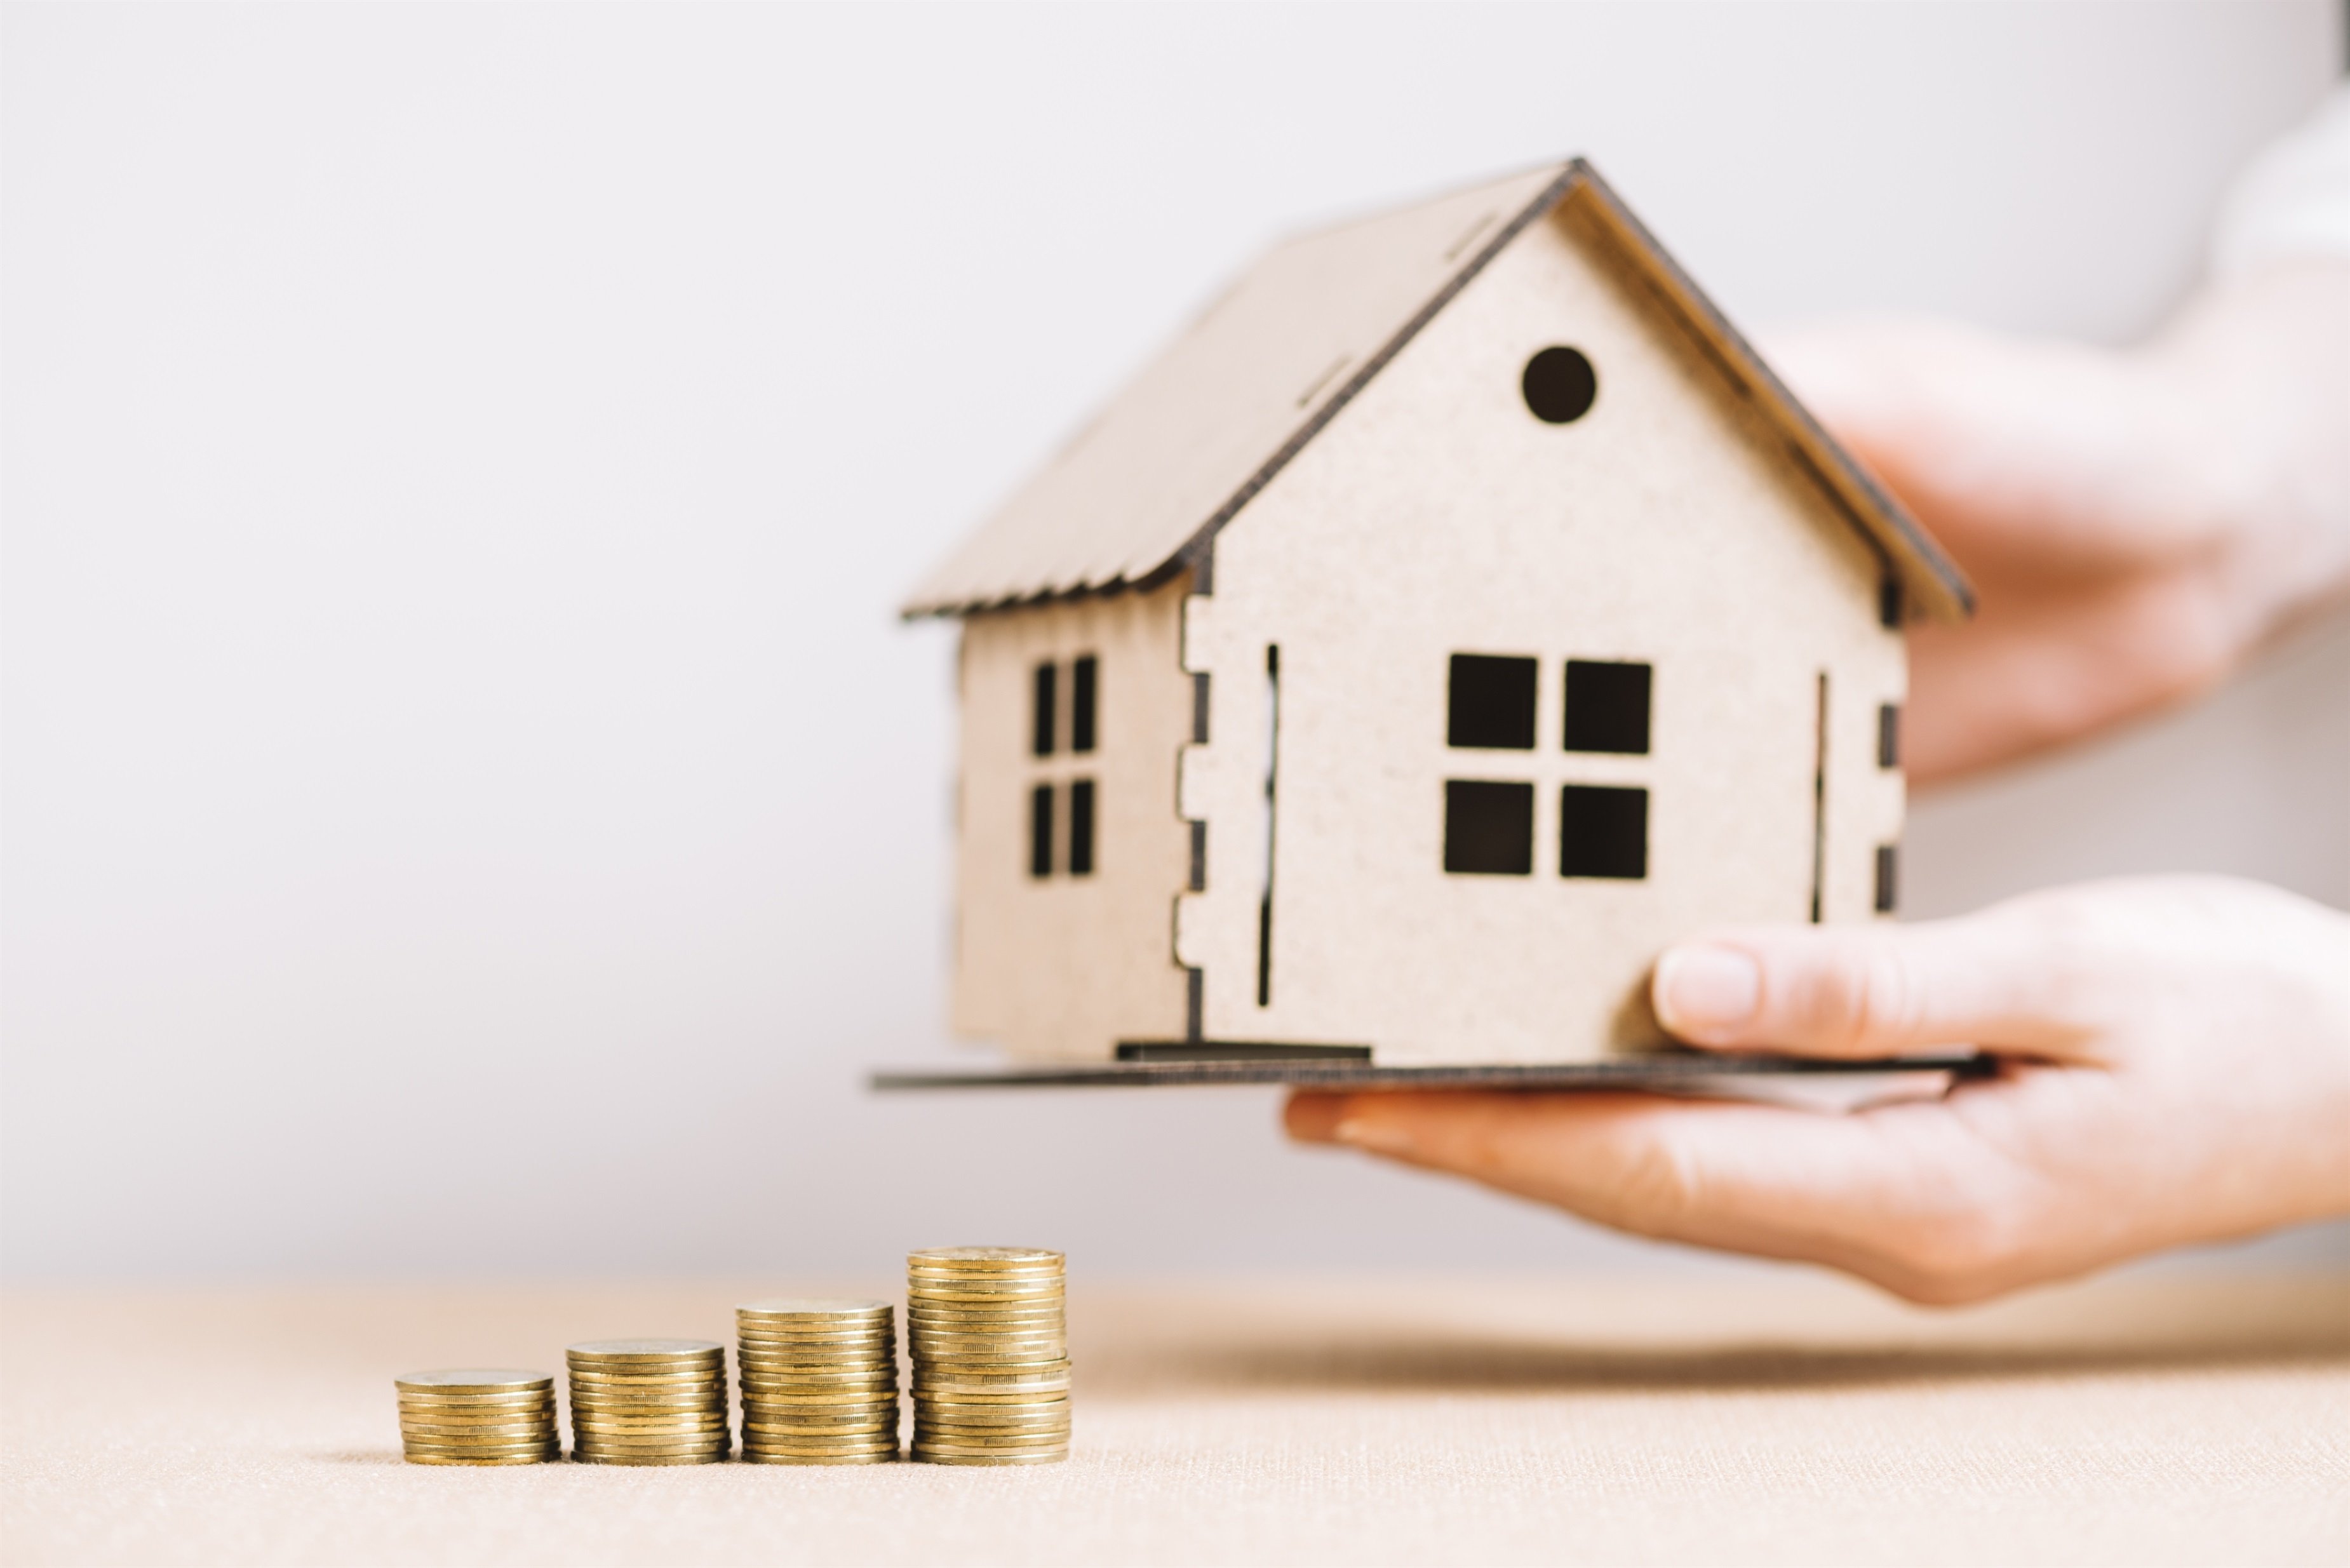 El tipus mitjà de les hipoteques frega el 3,6%, el nivell més alt des del 2012